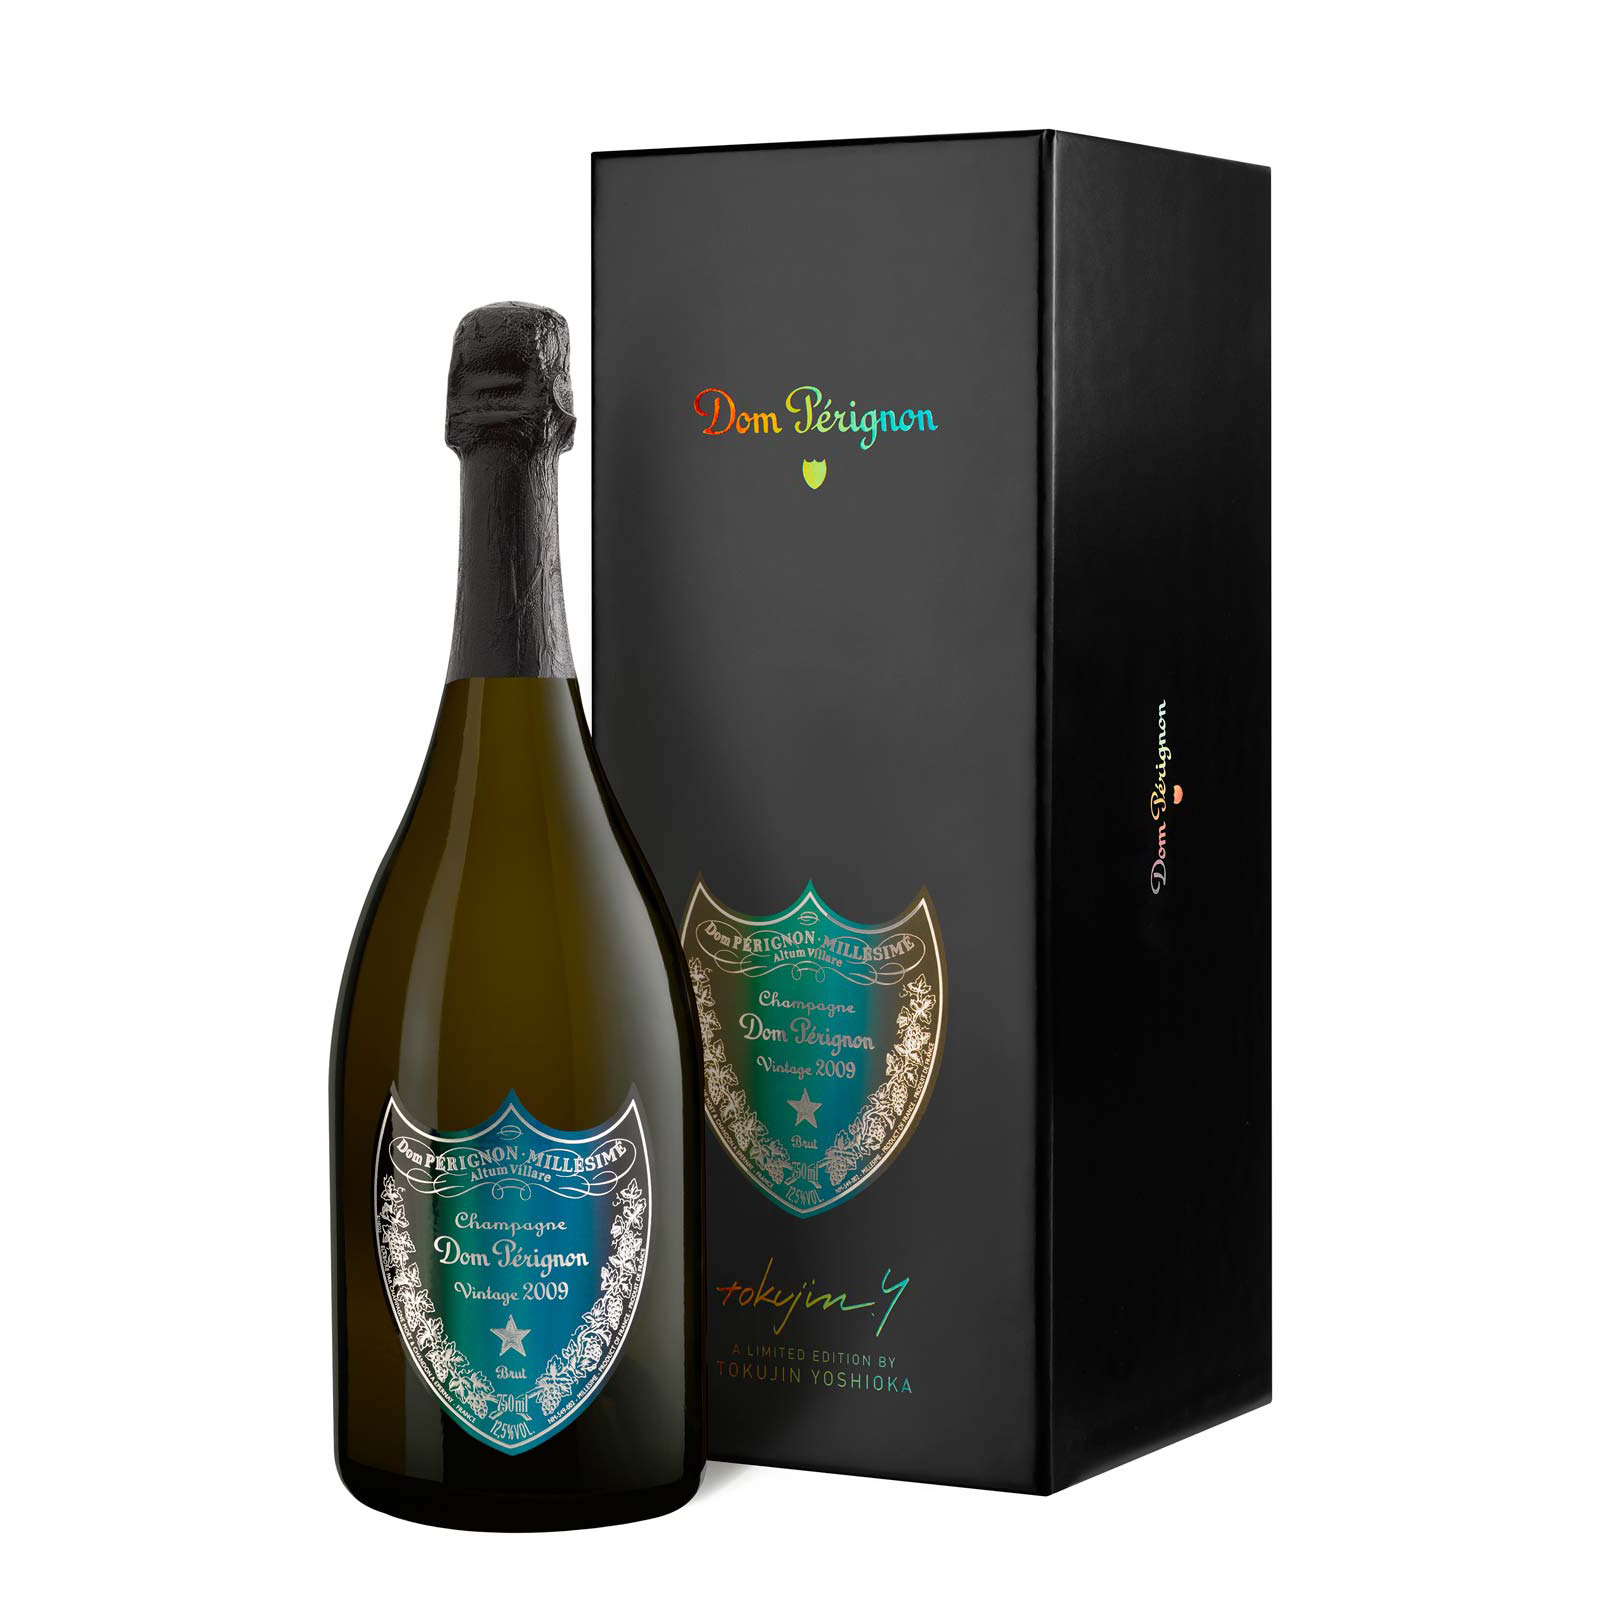 More Info Send Dom Perignon 2009 Vintage Champagne Tokujin Yoshioka Edition 75cl